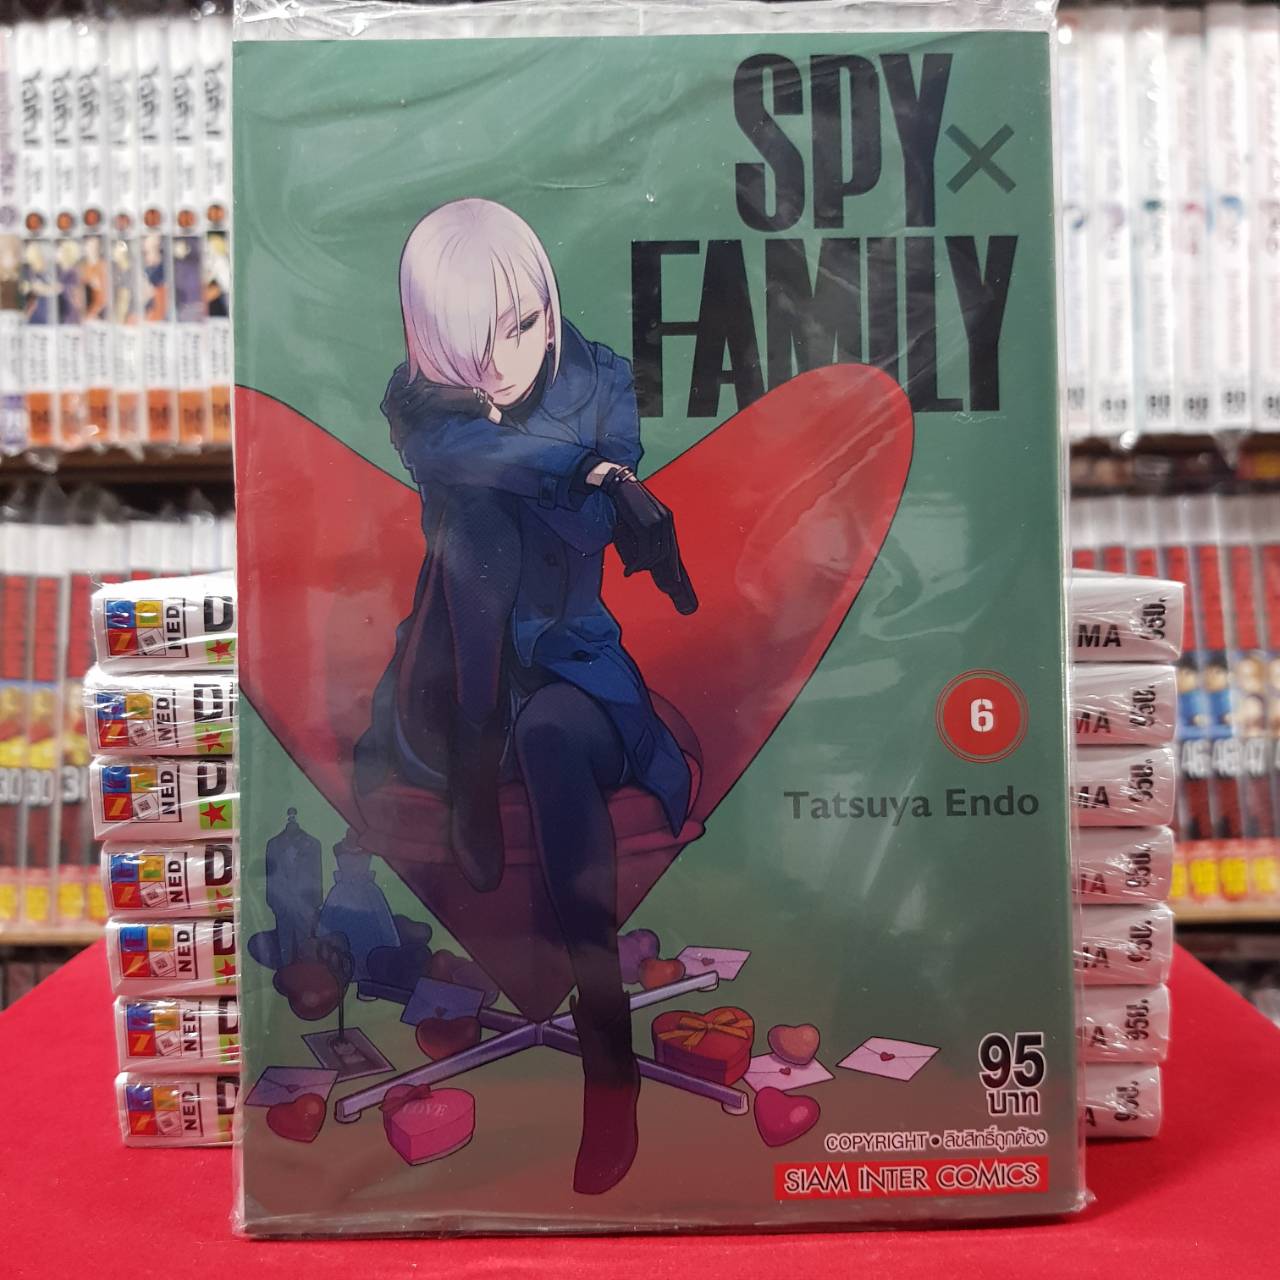 SPY FAMILY สปาย แฟมิลี่ เล่มที่ 6 หนังสือการ์ตูน มังงะ SPY x FAMILY สปายเอ็กซ์แฟมิรี่ SPYxFAMILY